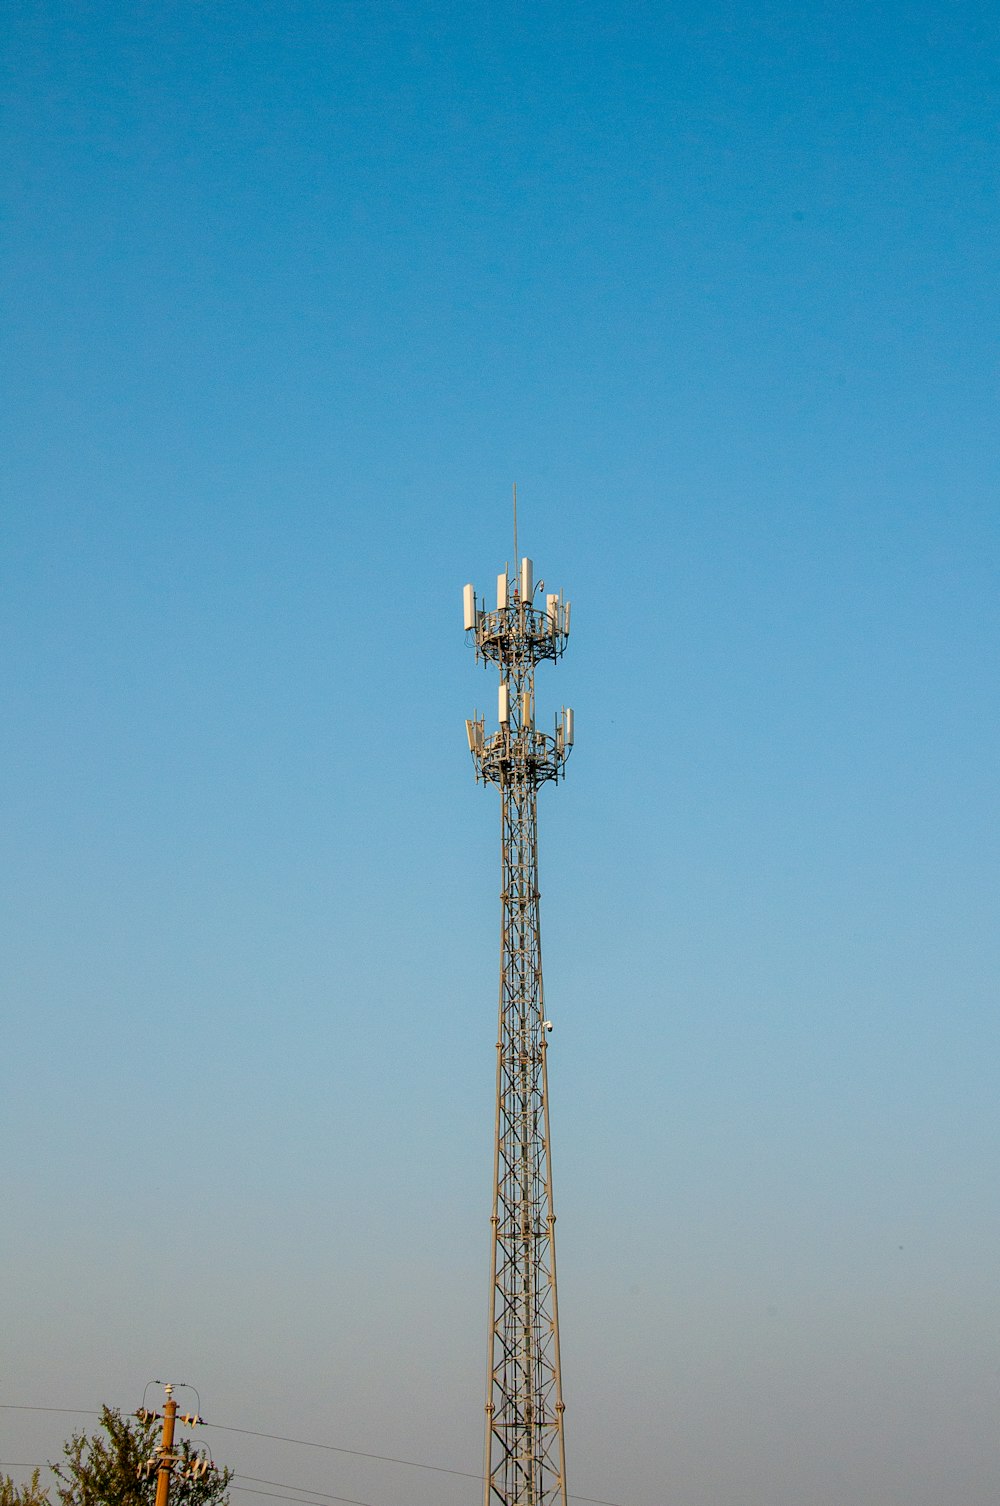 高い塔の上に携帯電話が置かれている